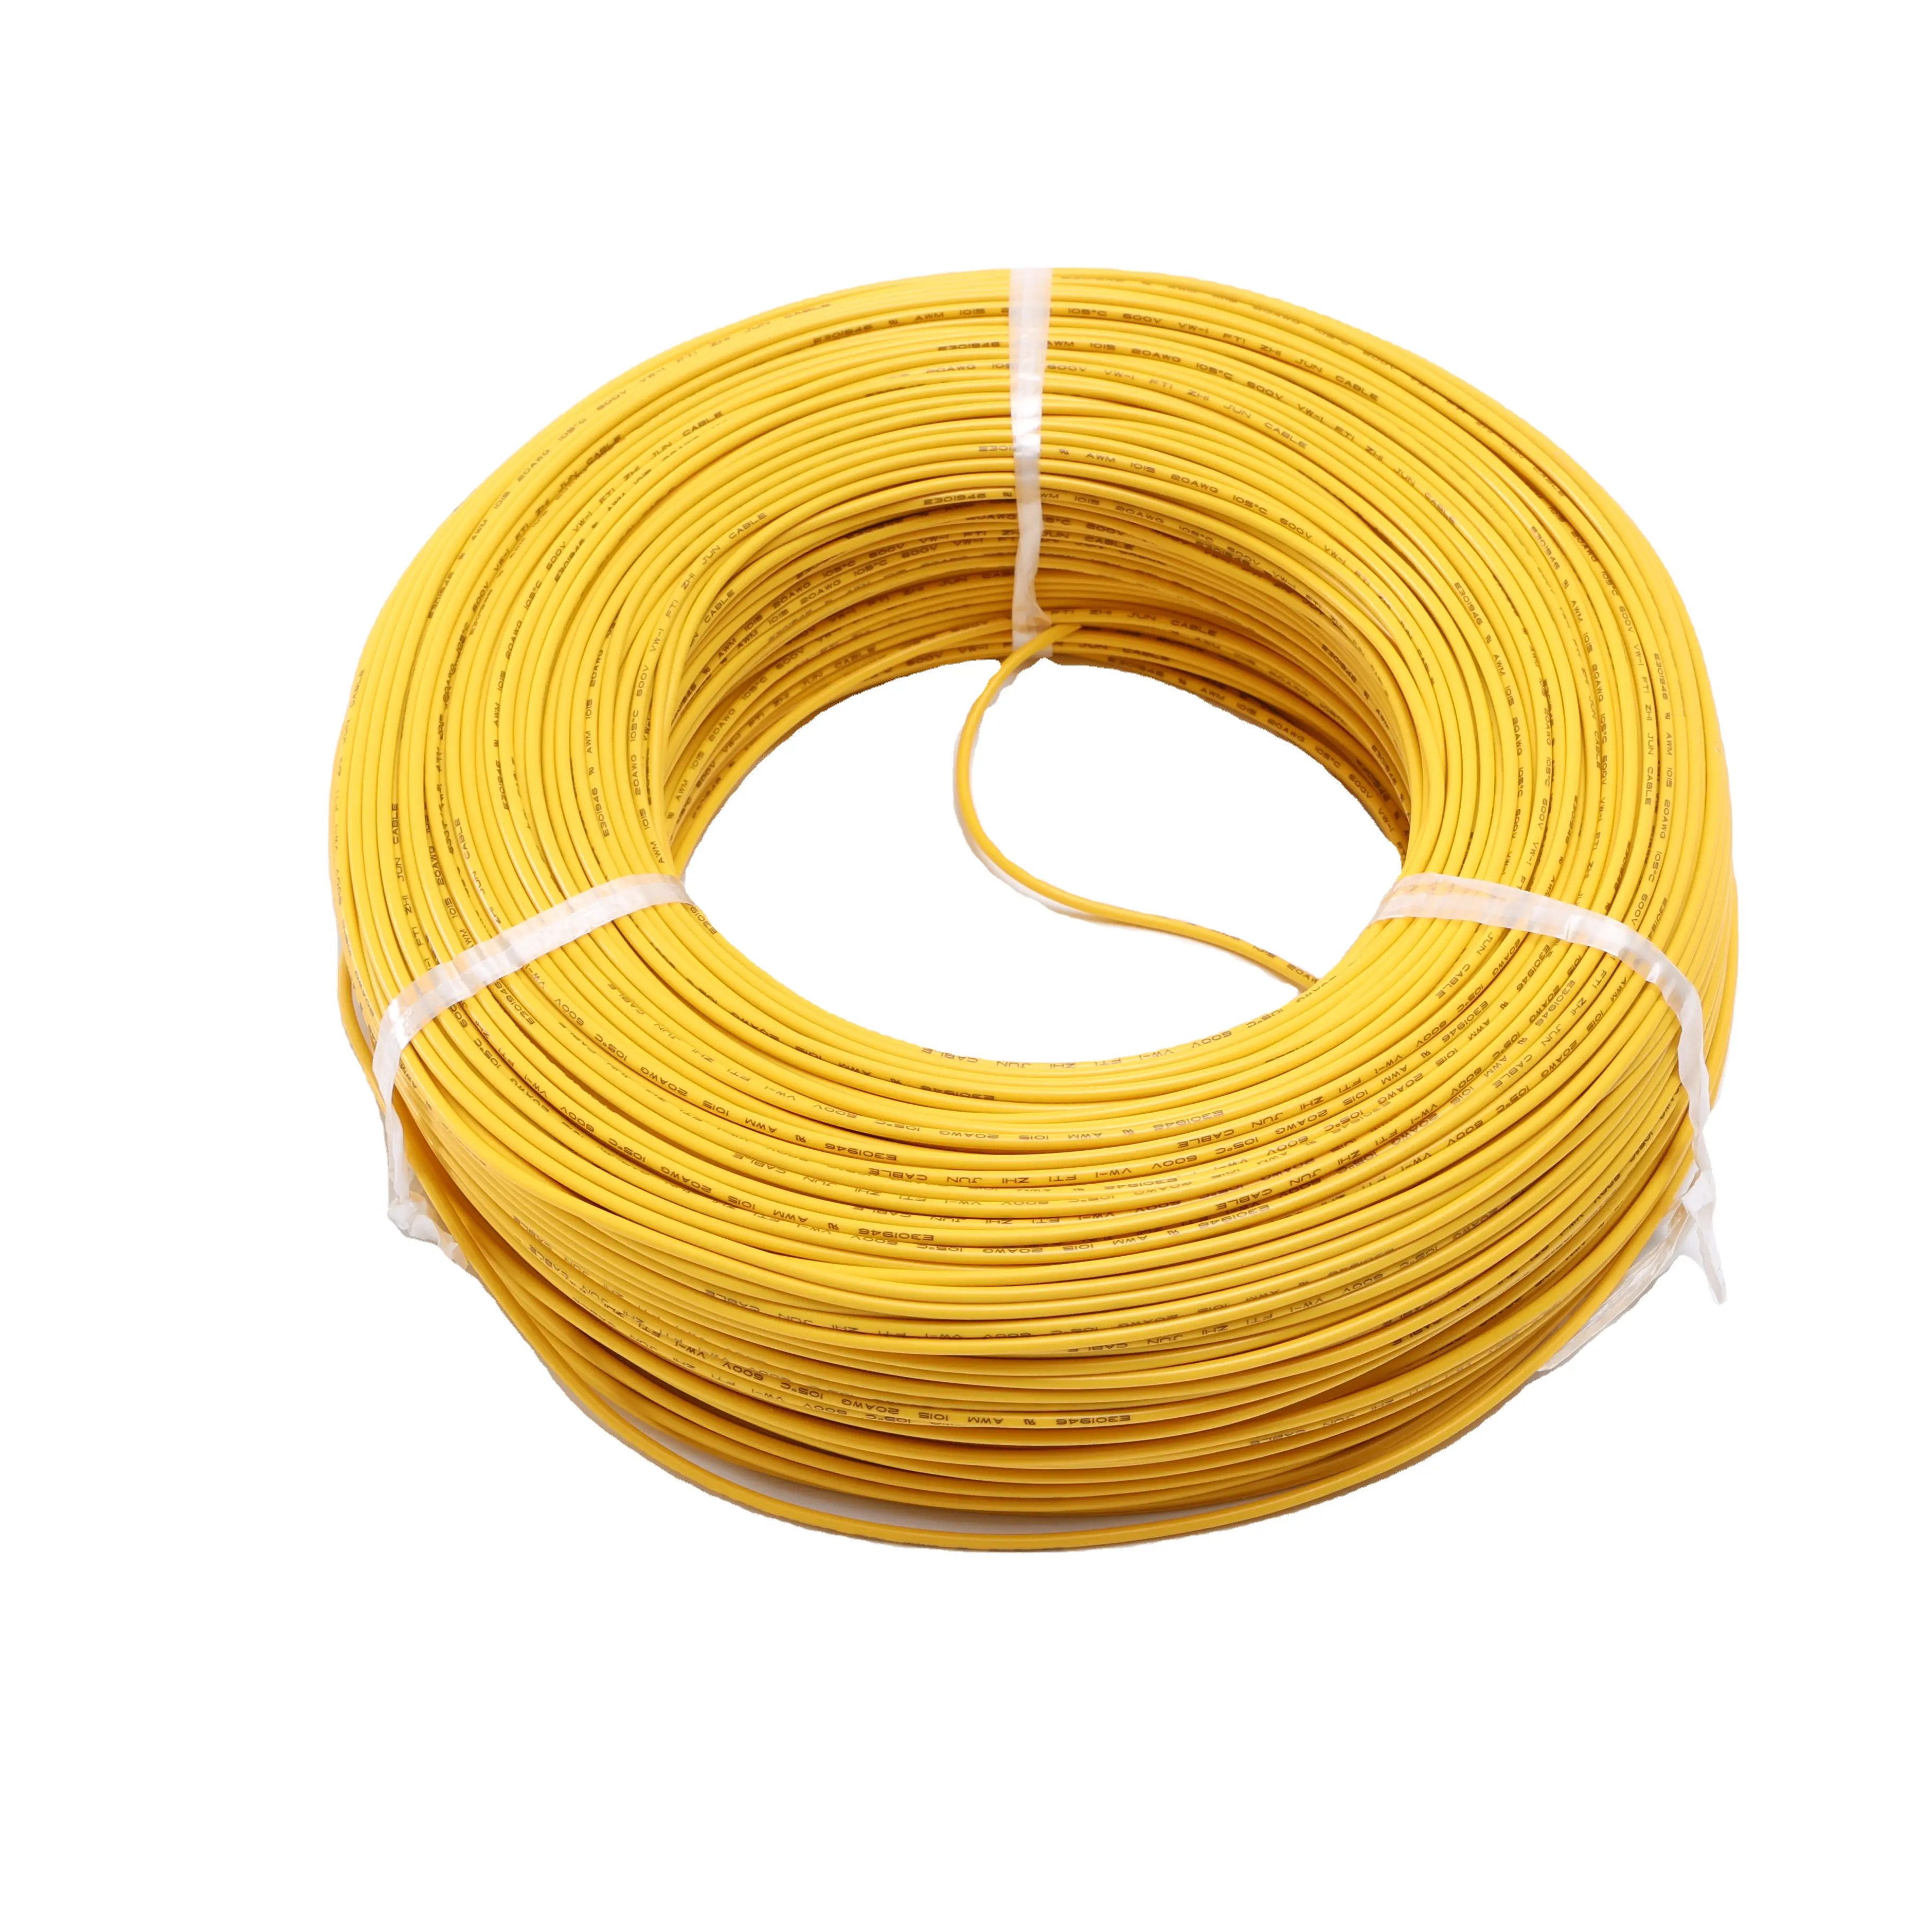 Grosir kabel listrik penerangan rumah PVC fleksibel, kabel listrik 4mm 6mm 10mm 16mm 1mm 1.5mm 2.5mm